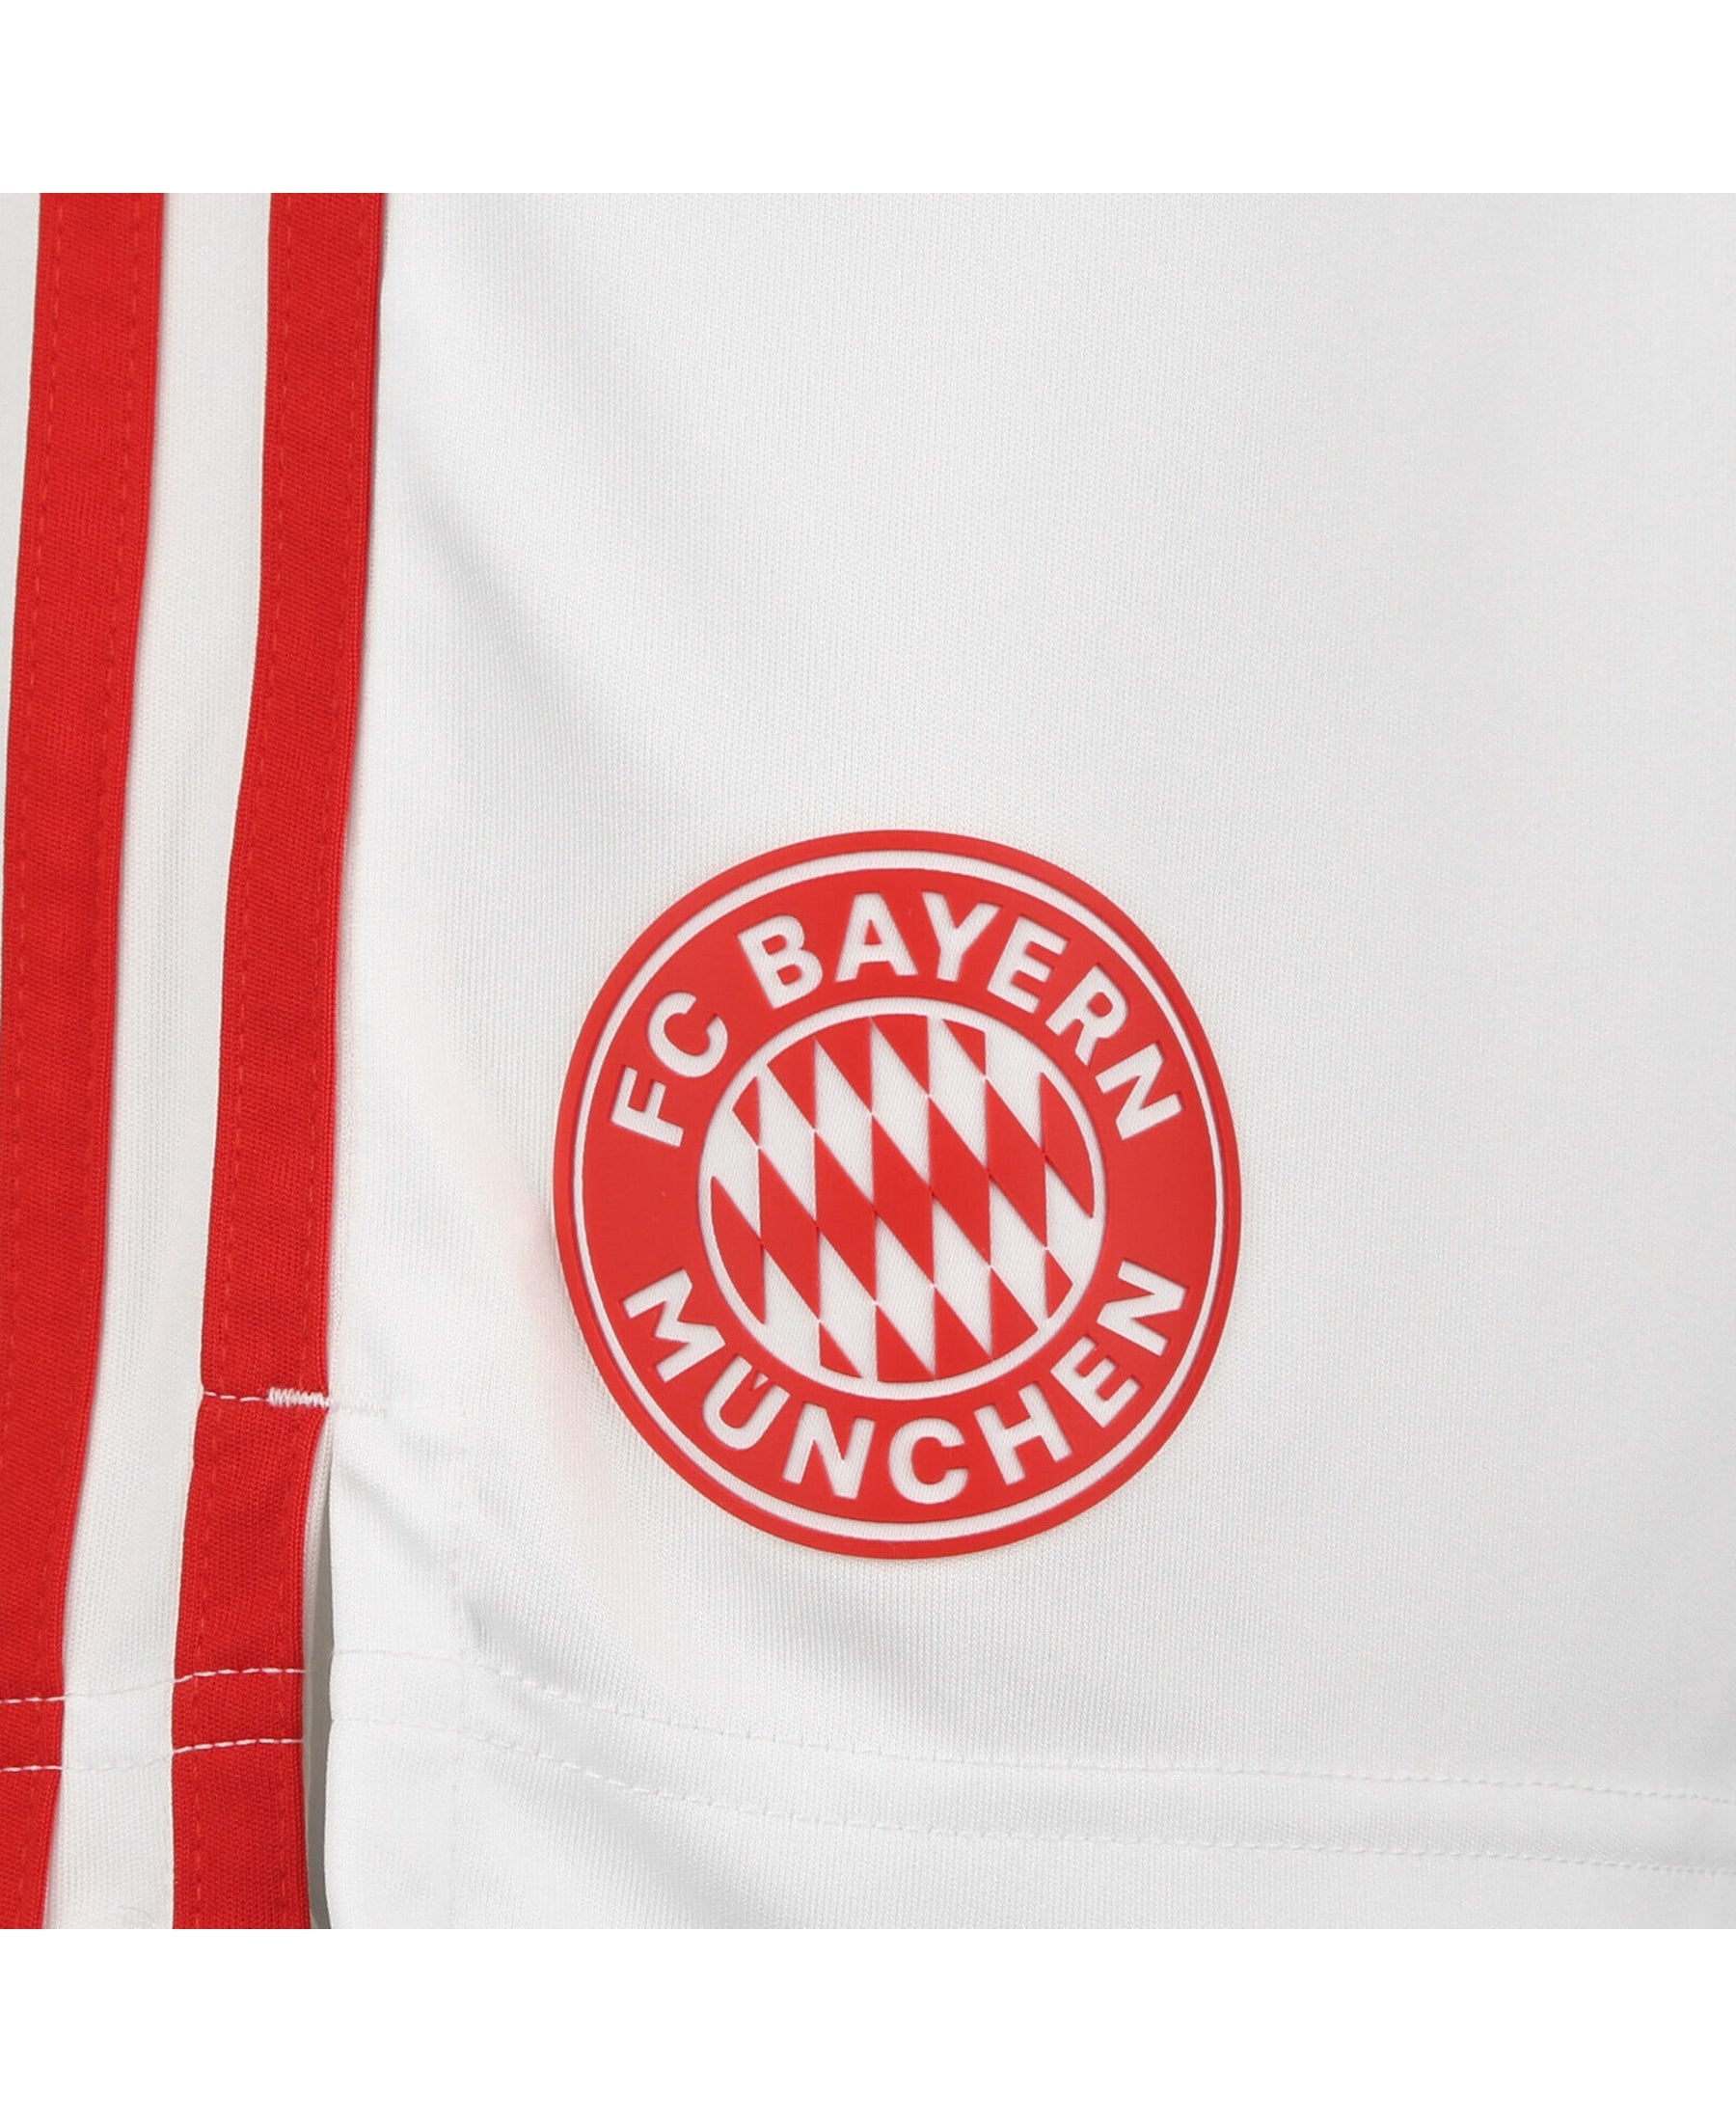 Die Adidas FC Bayern München Ausweichshorts 2021-2022 (GM5314) sind perfekt für Fans des FC Bayern. In elegantem Weiß gehalten, sind sie ideal für Training und Freizeit. Das offizielle Vereinslogo und das adidas Logo sind hochwertig aufgestickt. Mit ihrem bequemen, feuchtigkeitsableitenden Material bieten diese Shorts Komfort und Stil. Jetzt bei SHOP4TEAMSPORT bestellen und deine Unterstützung für den FC Bayern München zeigen!